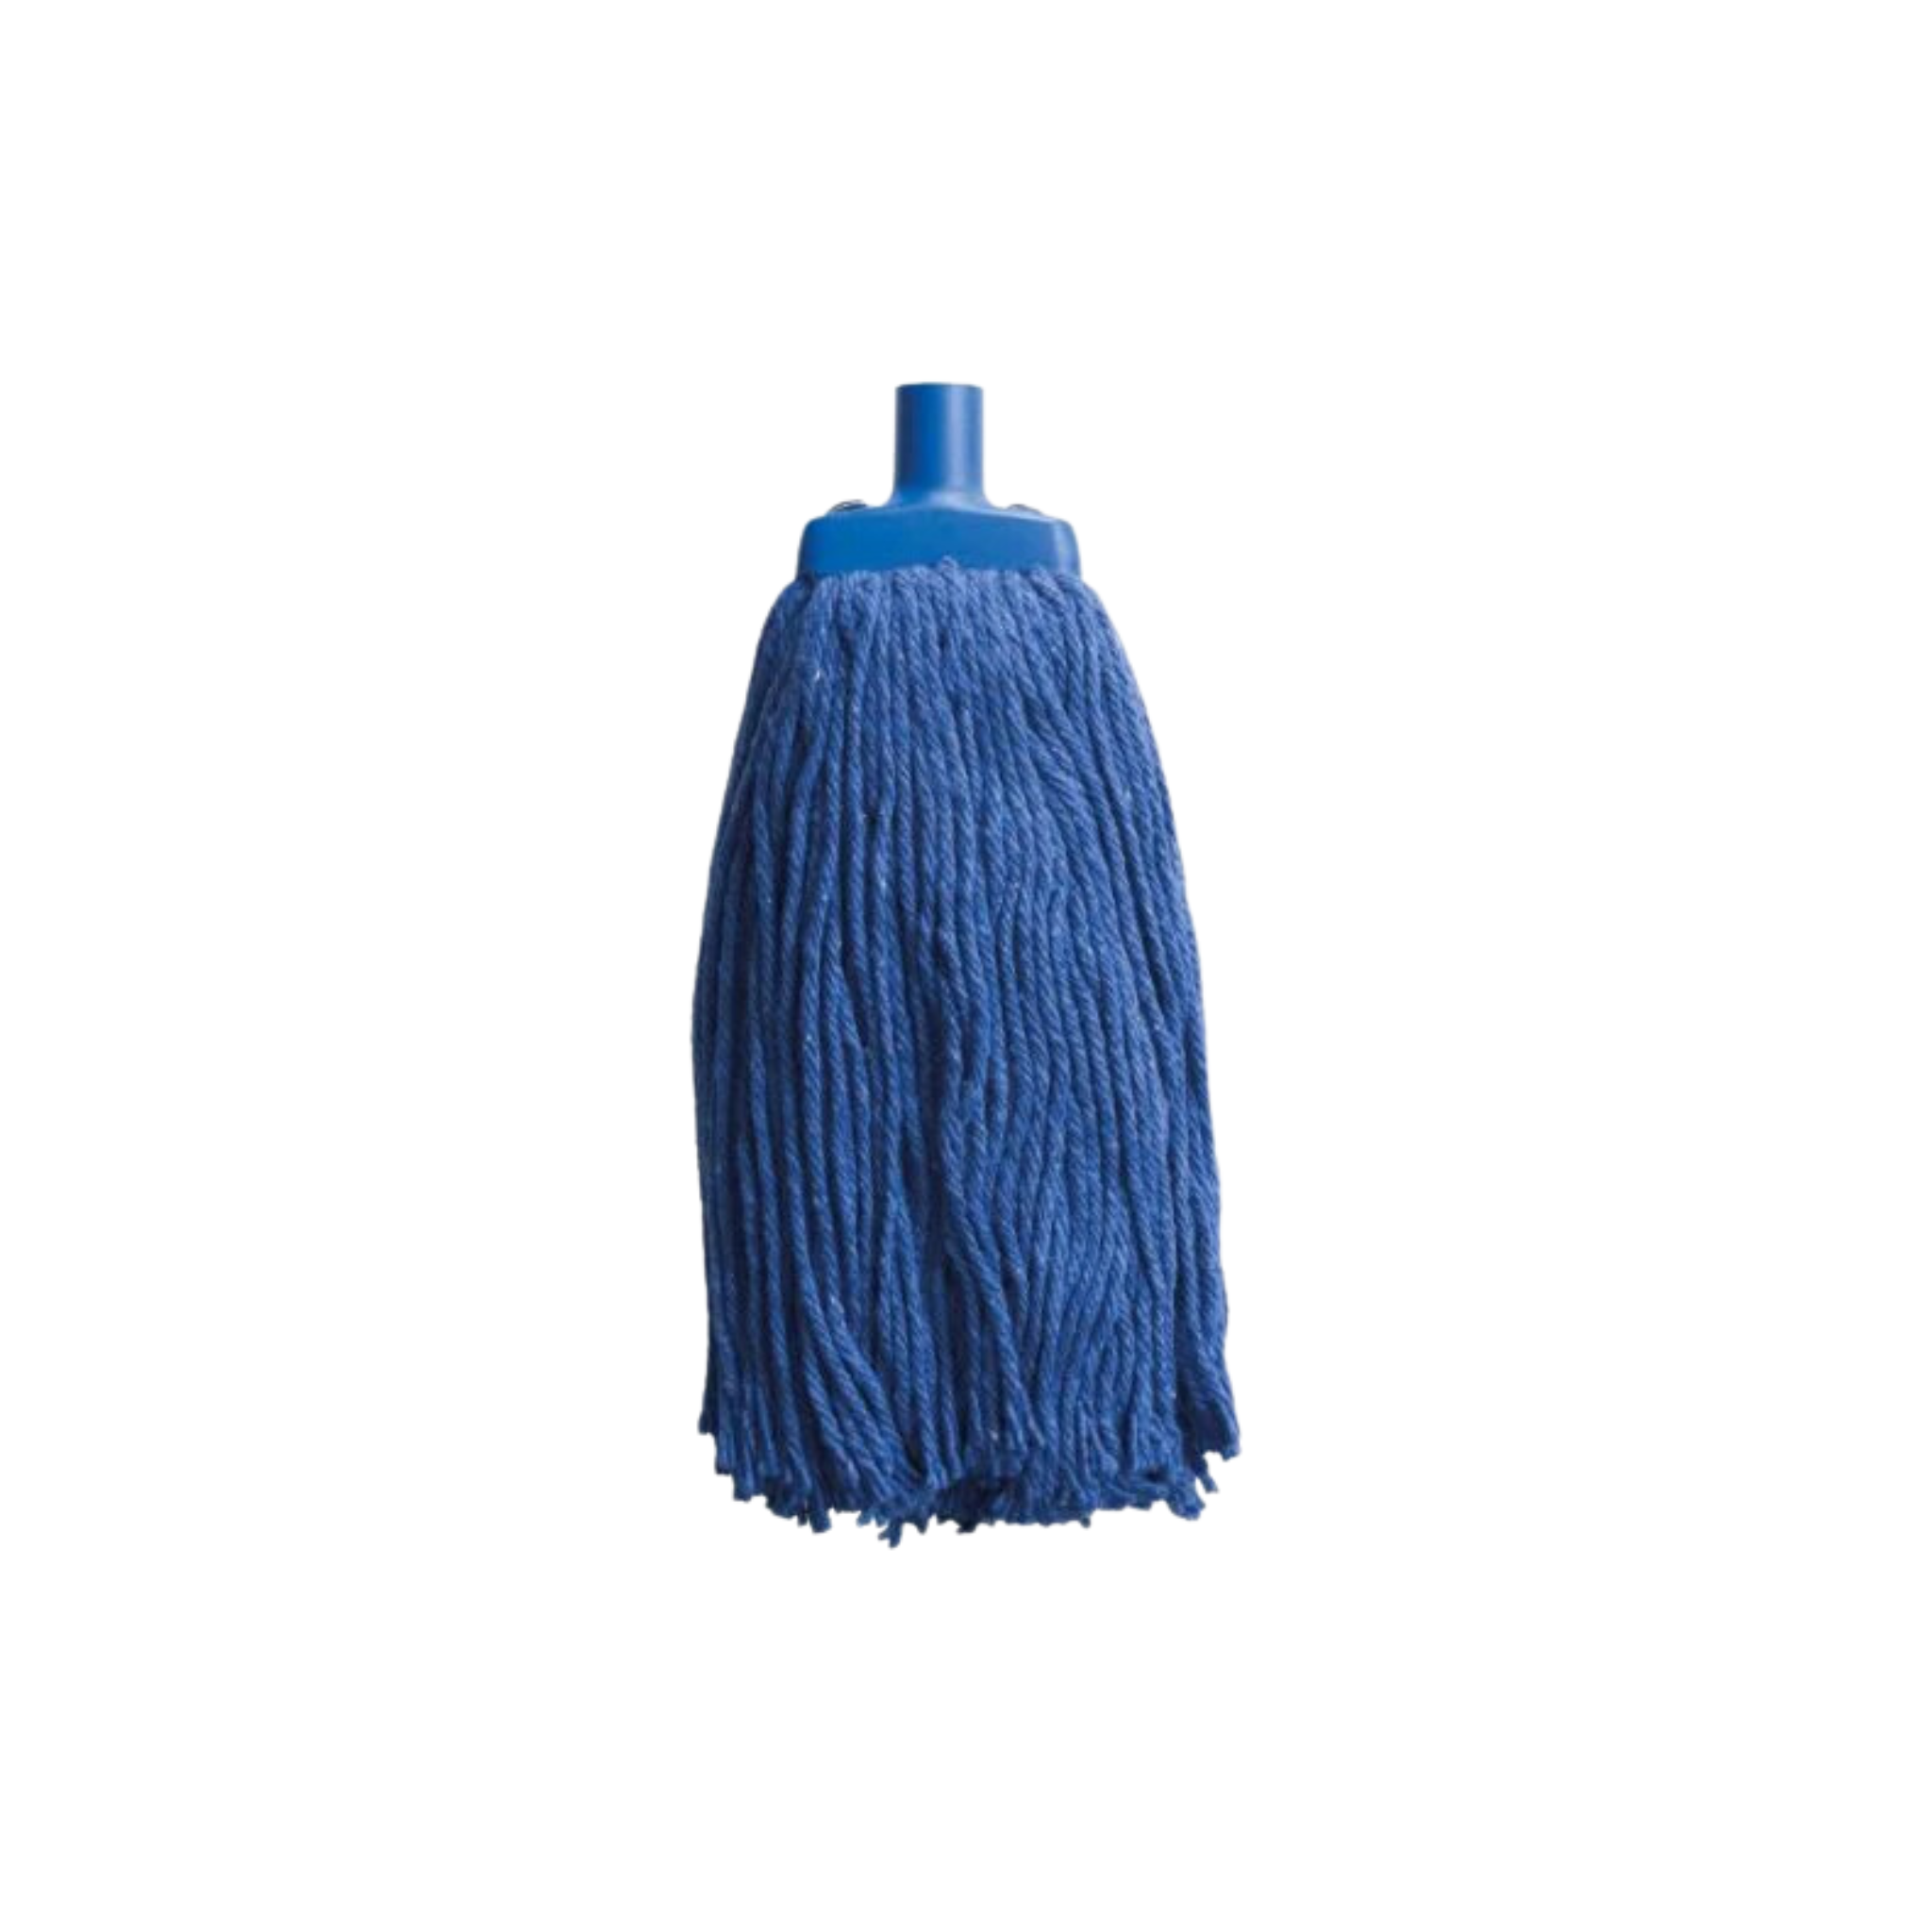 Oates Mop Head - Blue